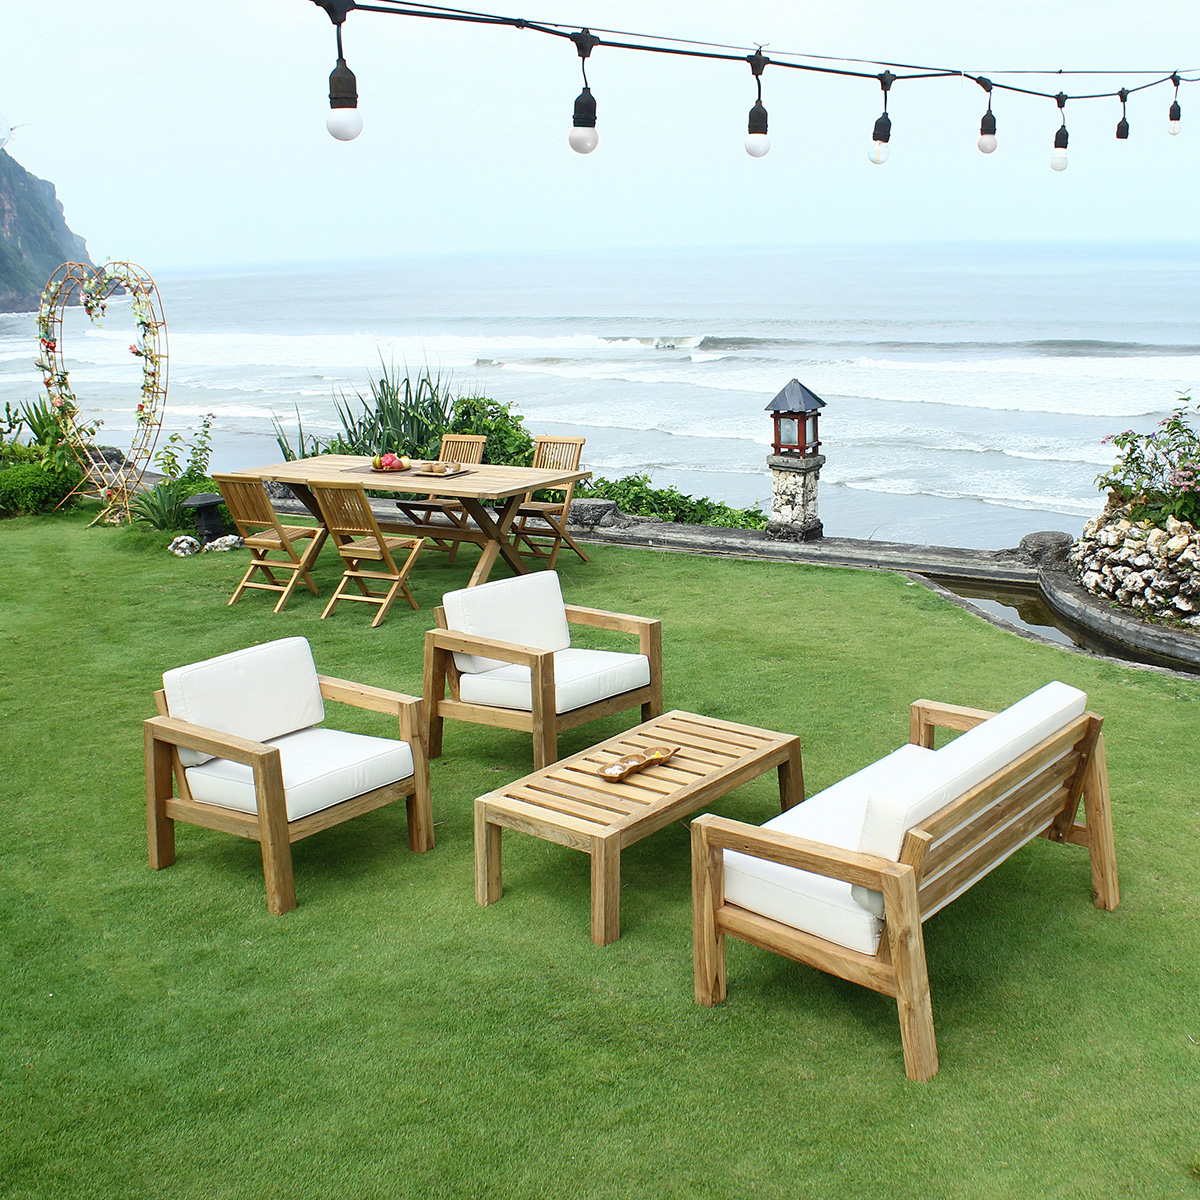 Salon de jardin lounge en teck avec deux fauteuils, un sofa et une table basse, le meuble teck indispensable pour passer de belles soirées d'été sur la terrasse !